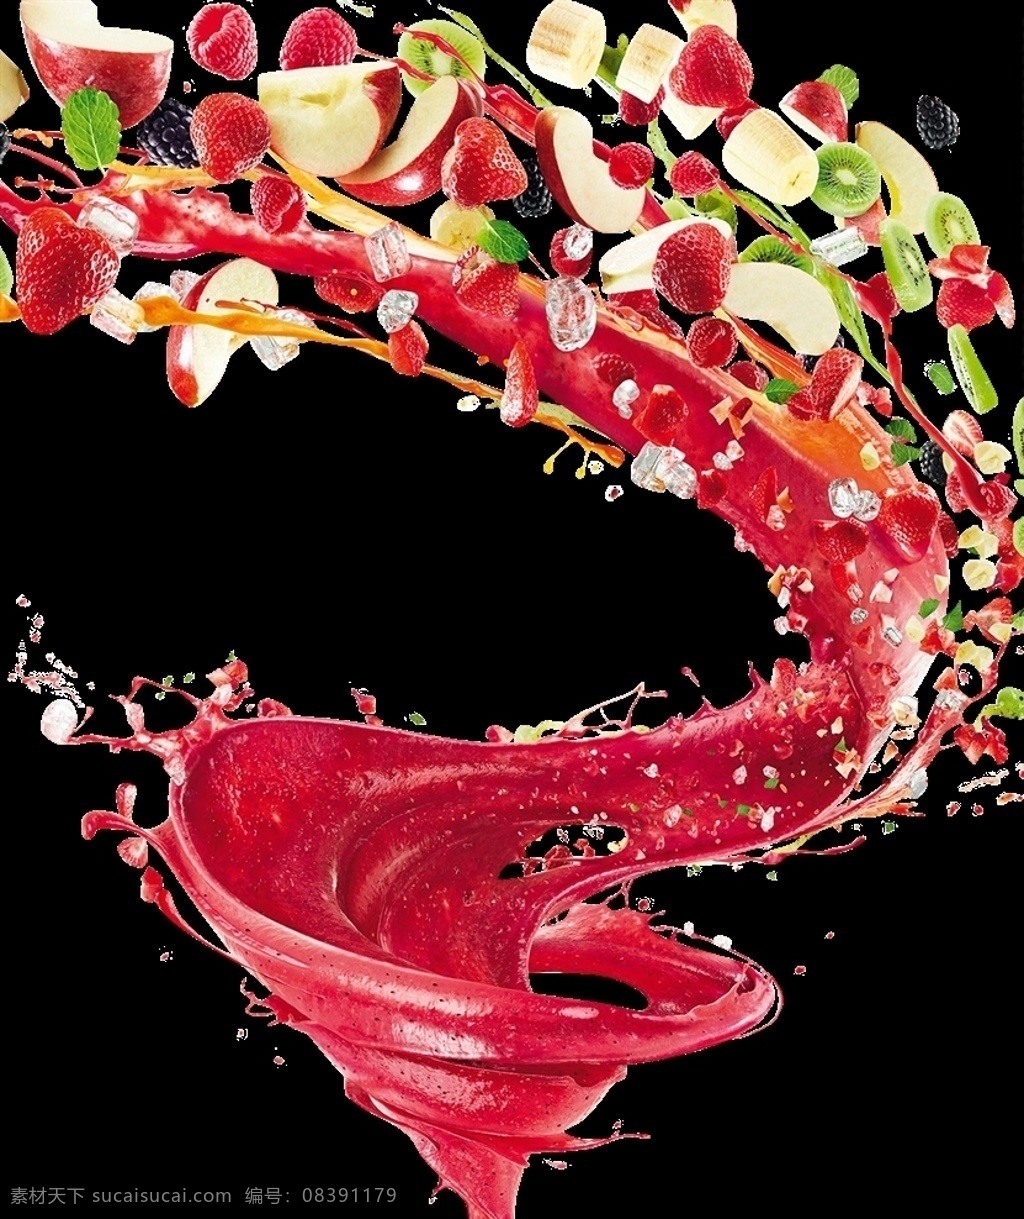 旋转 水果 果汁 饮品 饮料 草莓汁 橙汁 饮料素材 水果沙拉 夏天 分层 背景素材